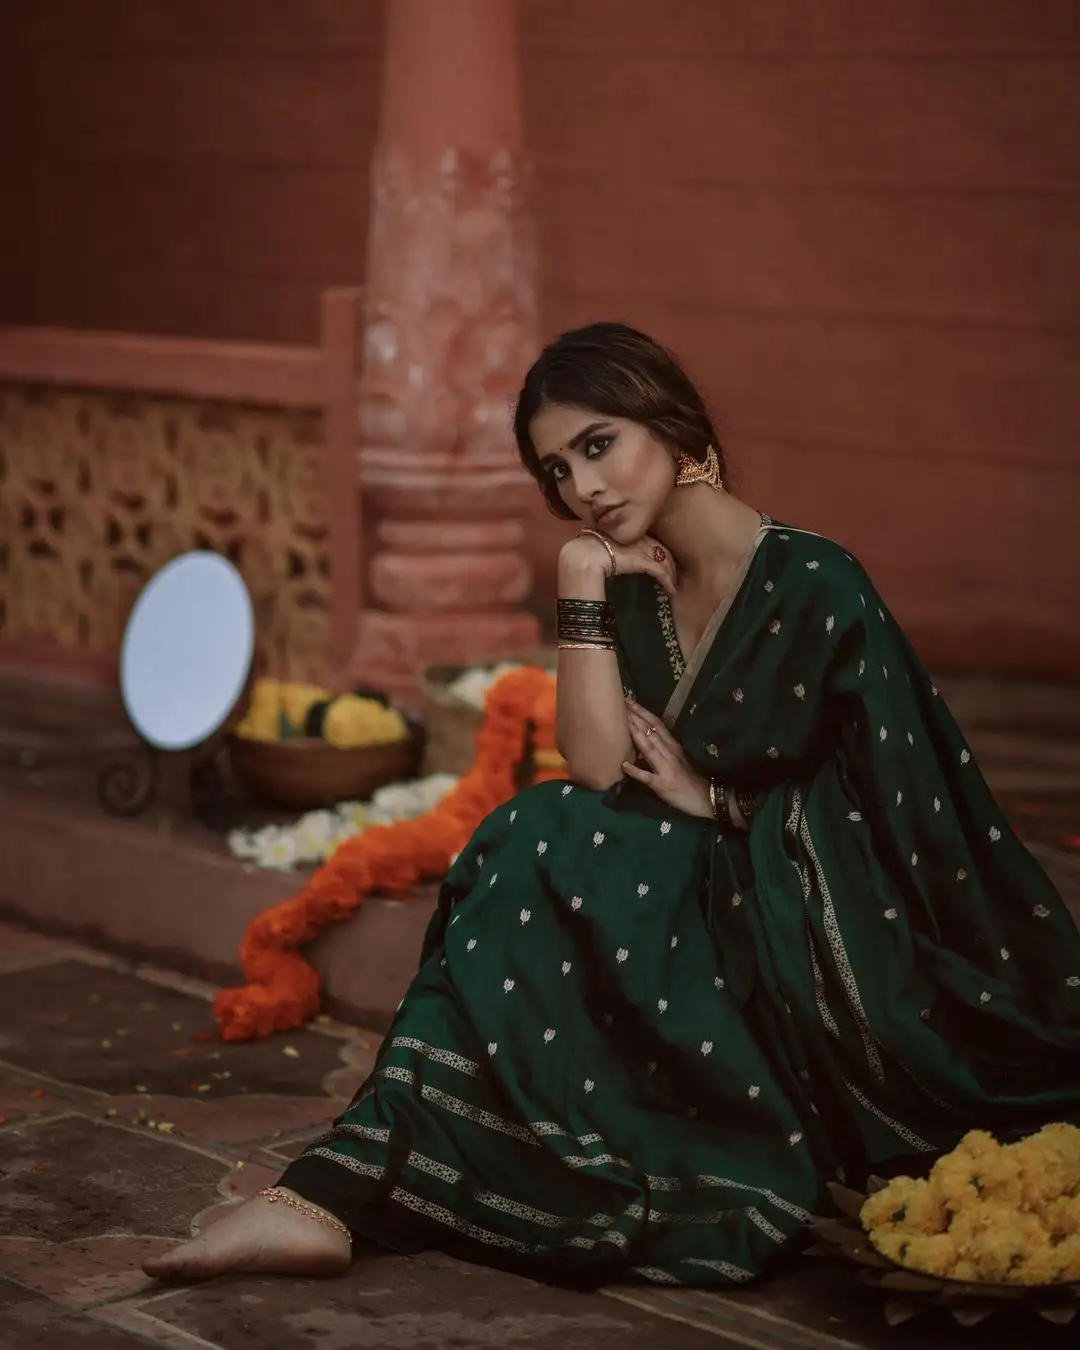 Nabha Natesh Stunning looks in Saree